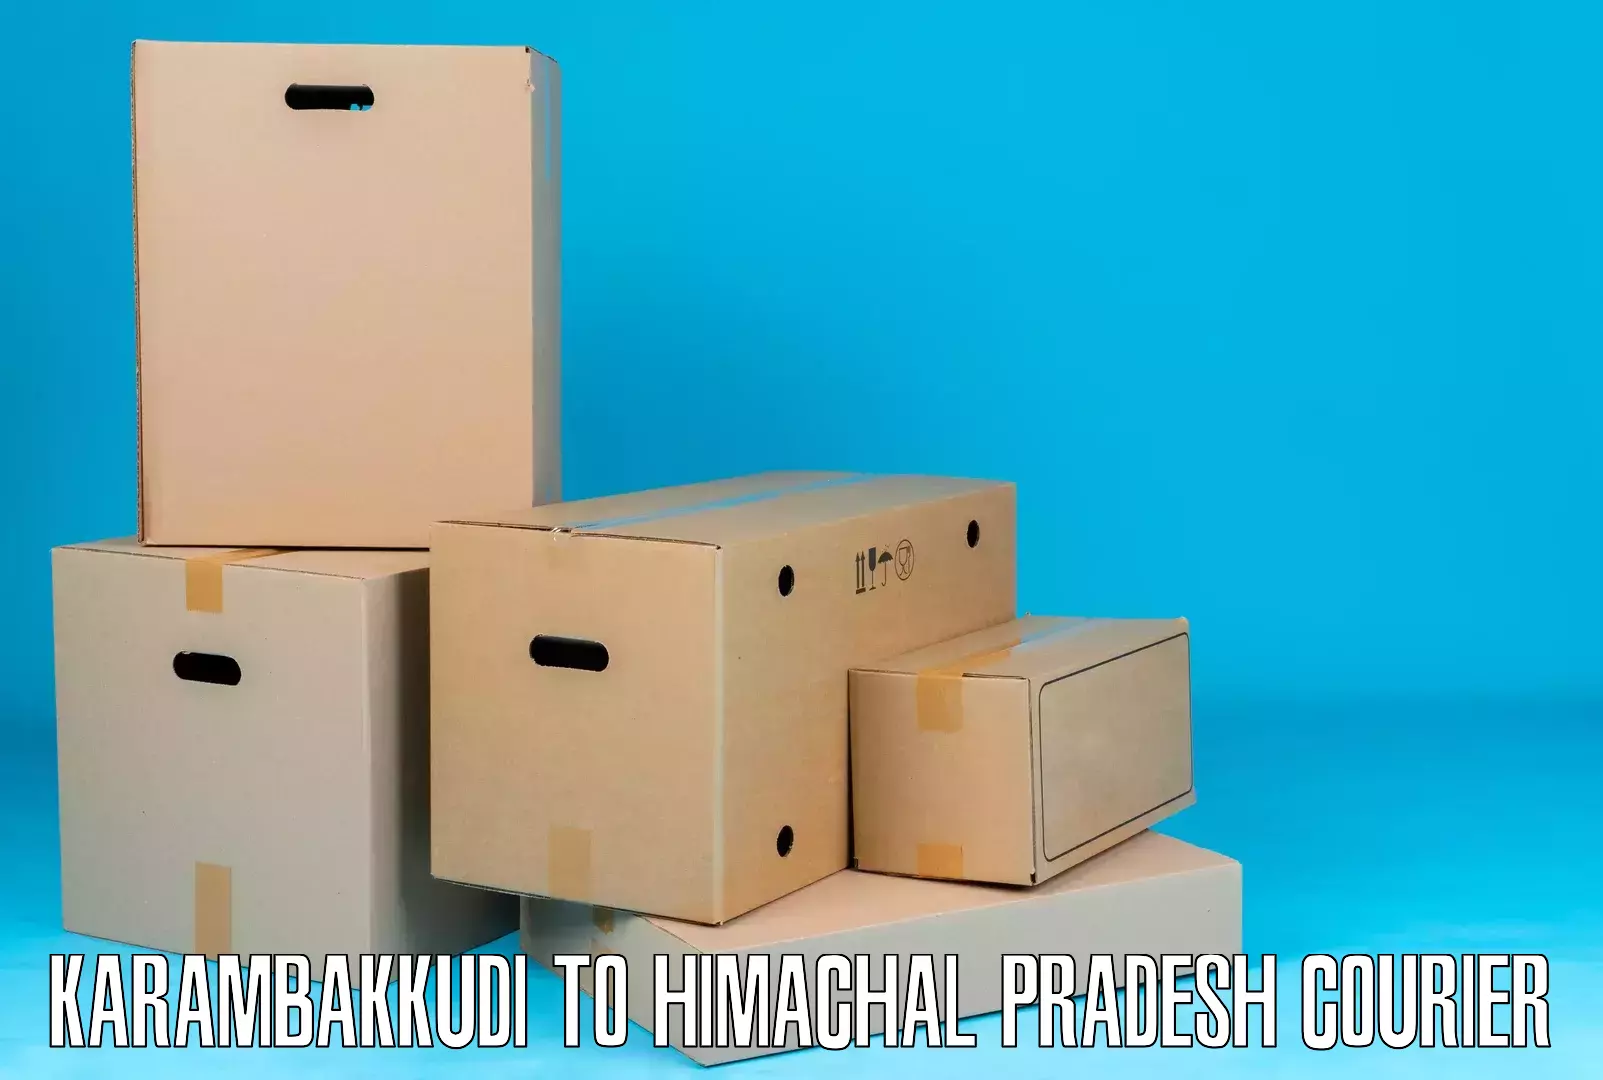 Versatile courier offerings Karambakkudi to Kullu